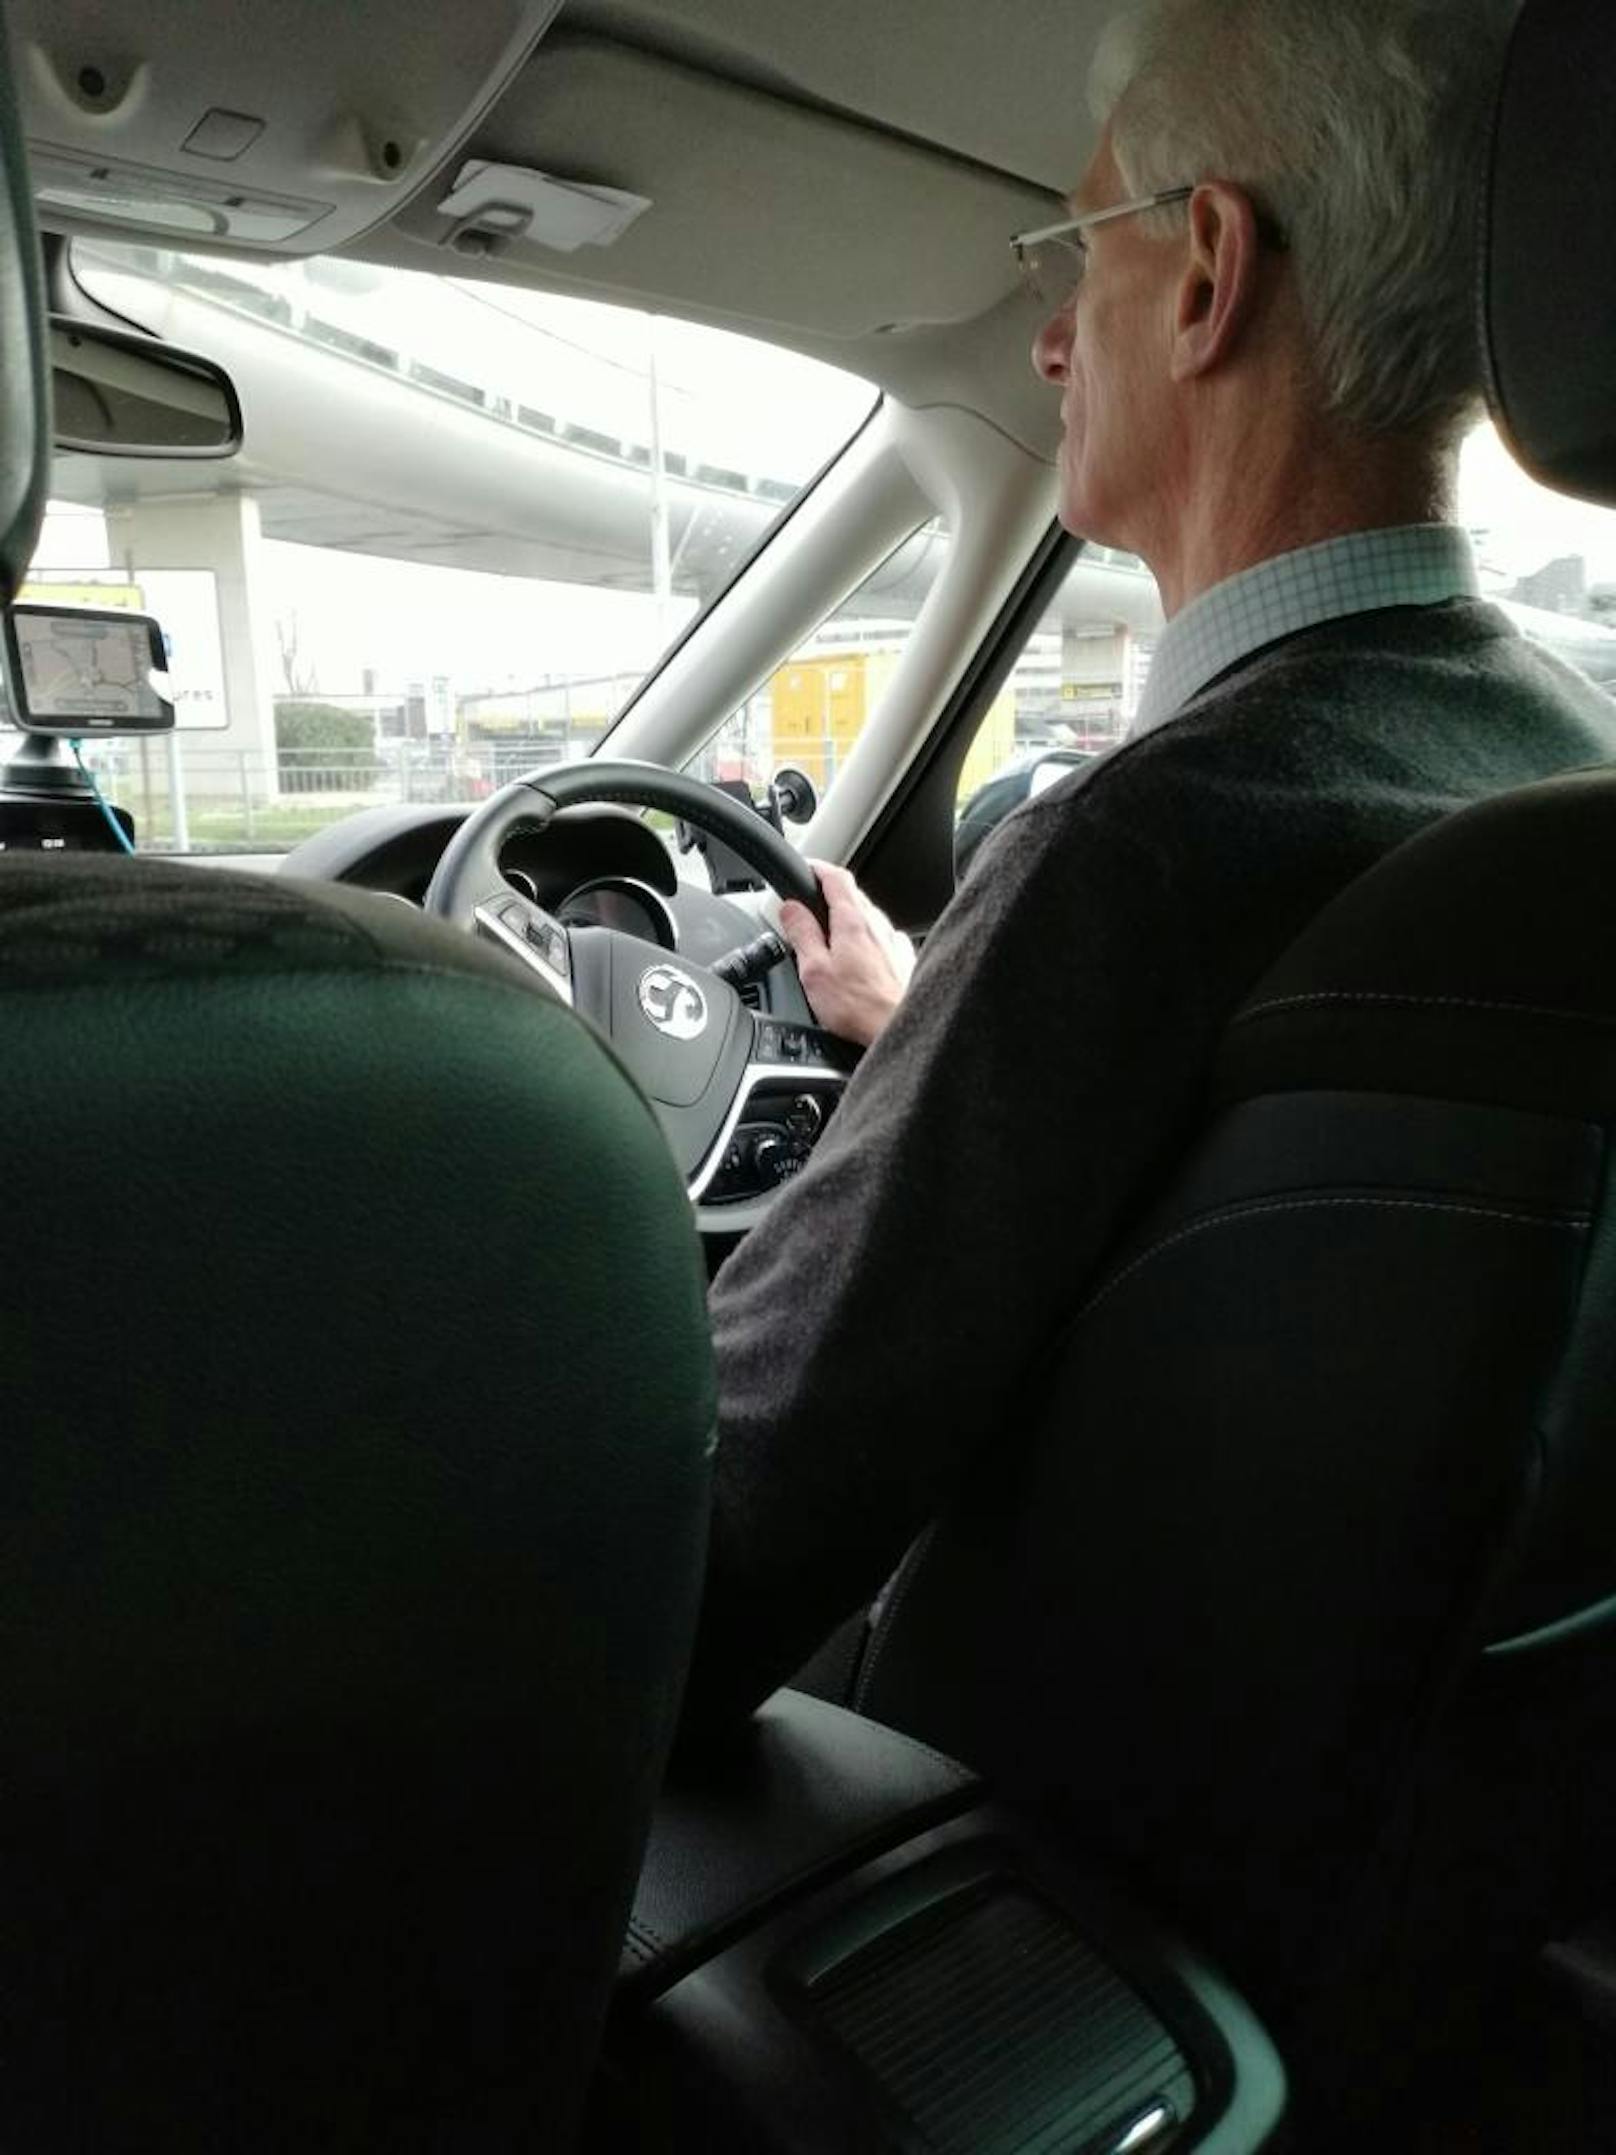 Taxi-Fahrer Paul, nicht zu verwechseln mit Arsene Wenger